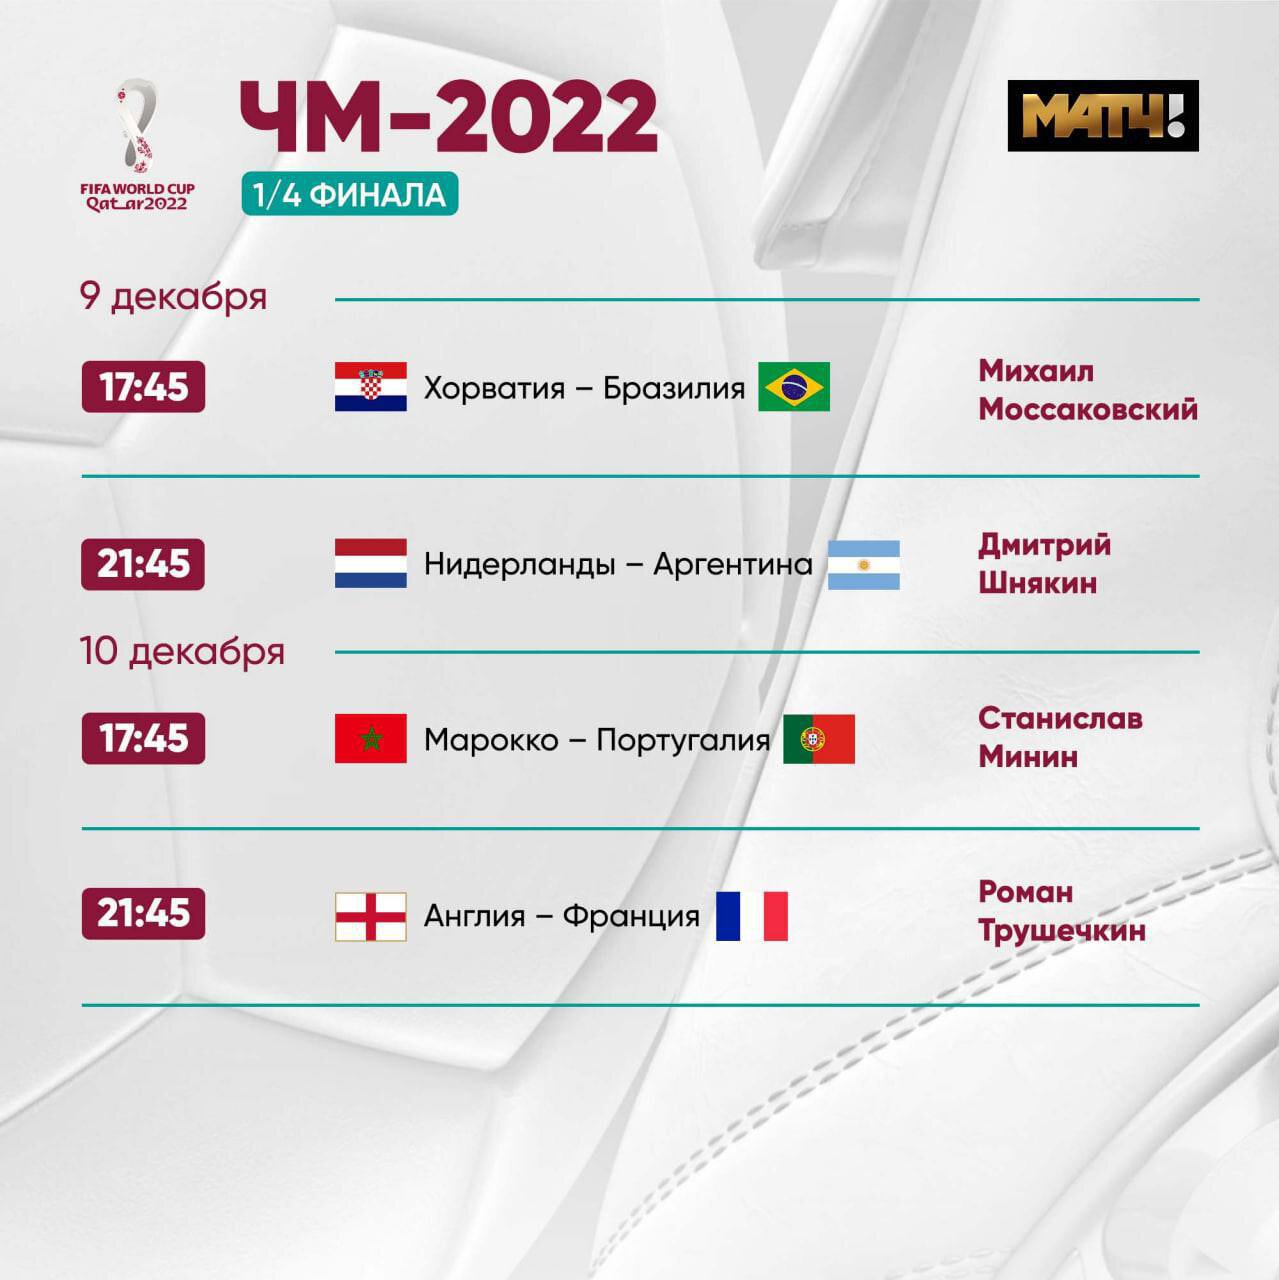 Генич больше не будет комментировать матчи ЧМ-2022: Никаких вопросов. Всем спасибо за отзывы. Если это не повод 